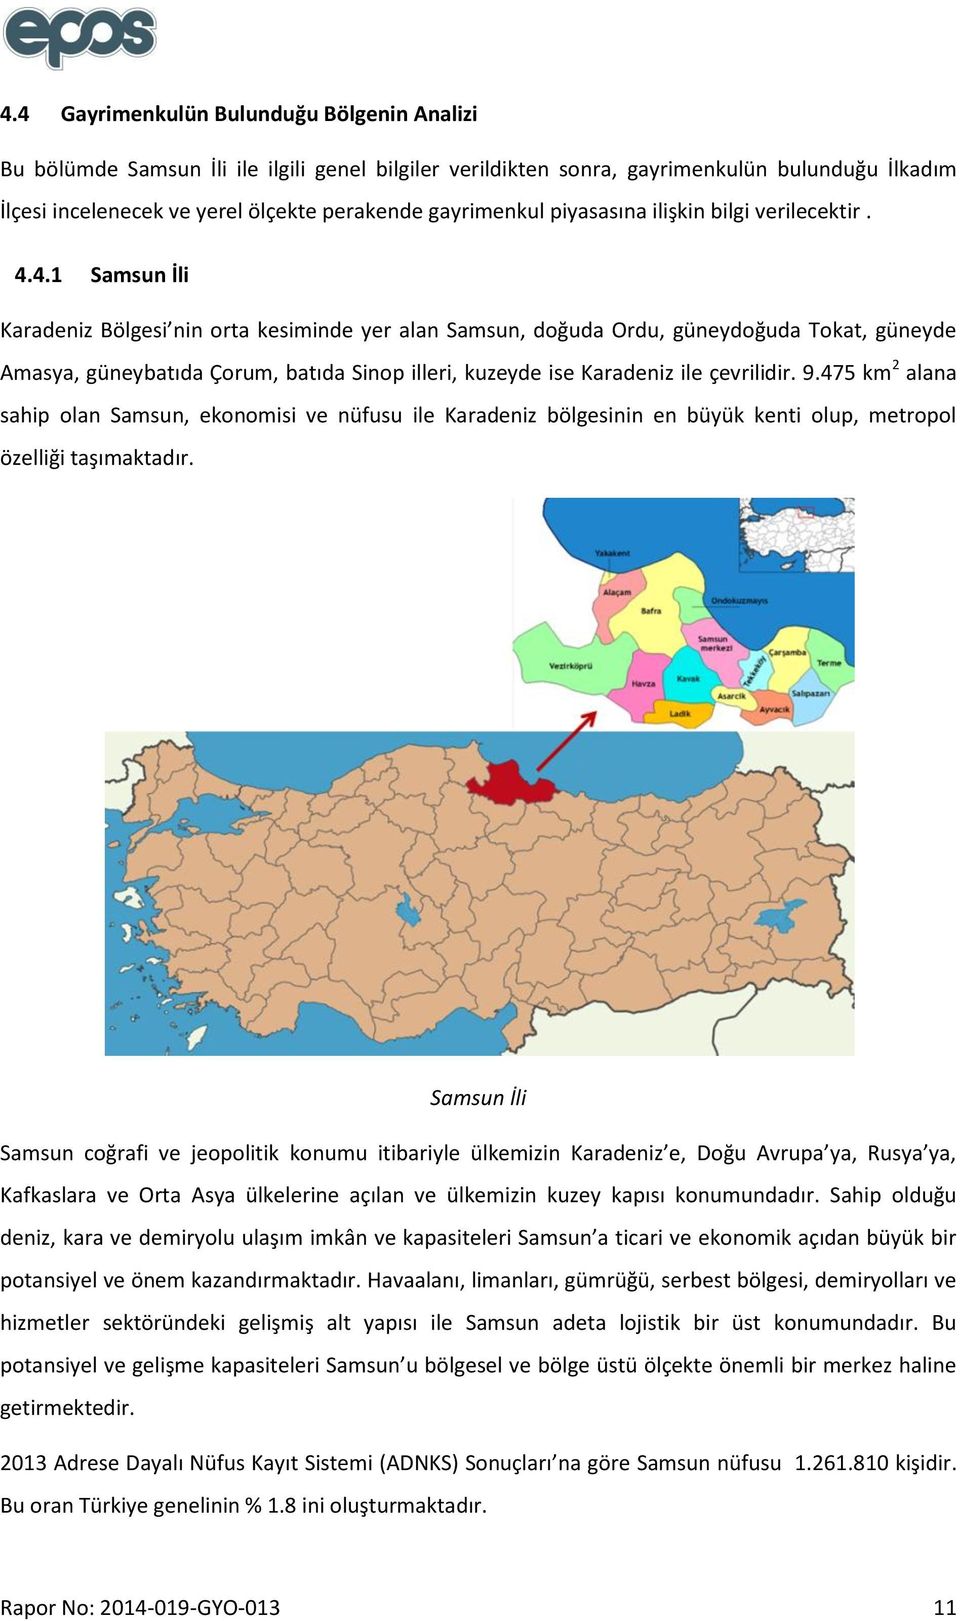 4.1 Samsun İli Karadeniz Bölgesi nin orta kesiminde yer alan Samsun, doğuda Ordu, güneydoğuda Tokat, güneyde Amasya, güneybatıda Çorum, batıda Sinop illeri, kuzeyde ise Karadeniz ile çevrilidir. 9.